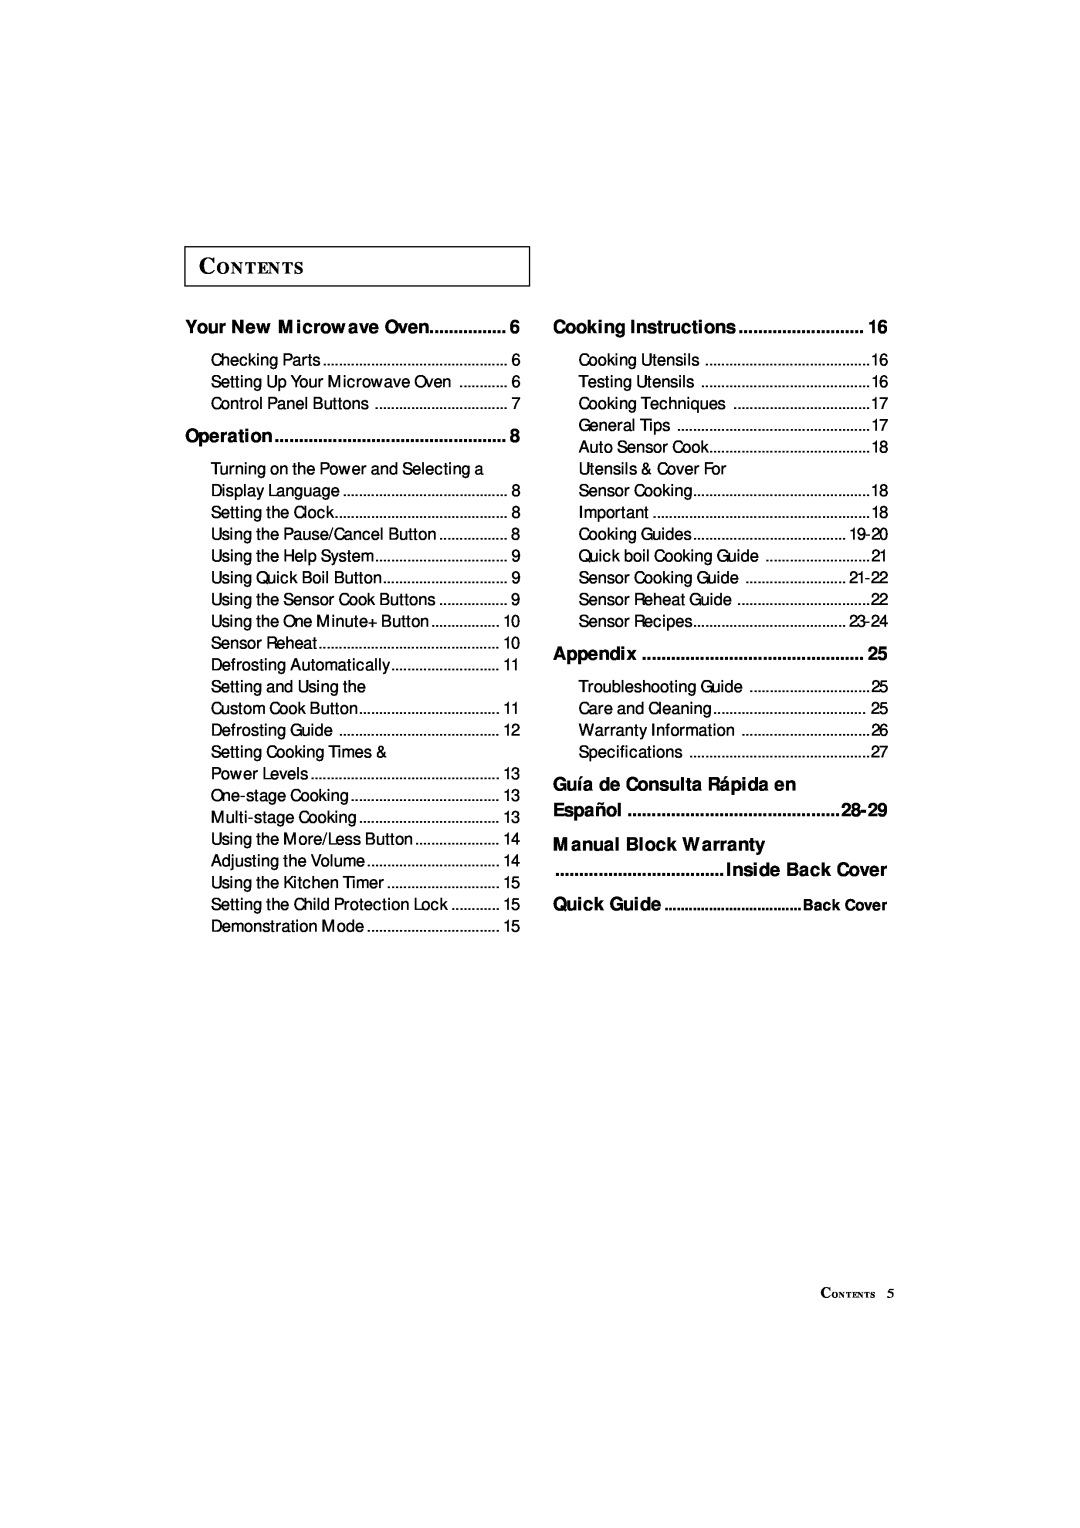 Samsung MS8899S manual 28-29, Manual Block Warranty, Contents, Guía de Consulta Rápida en, Back Cover 